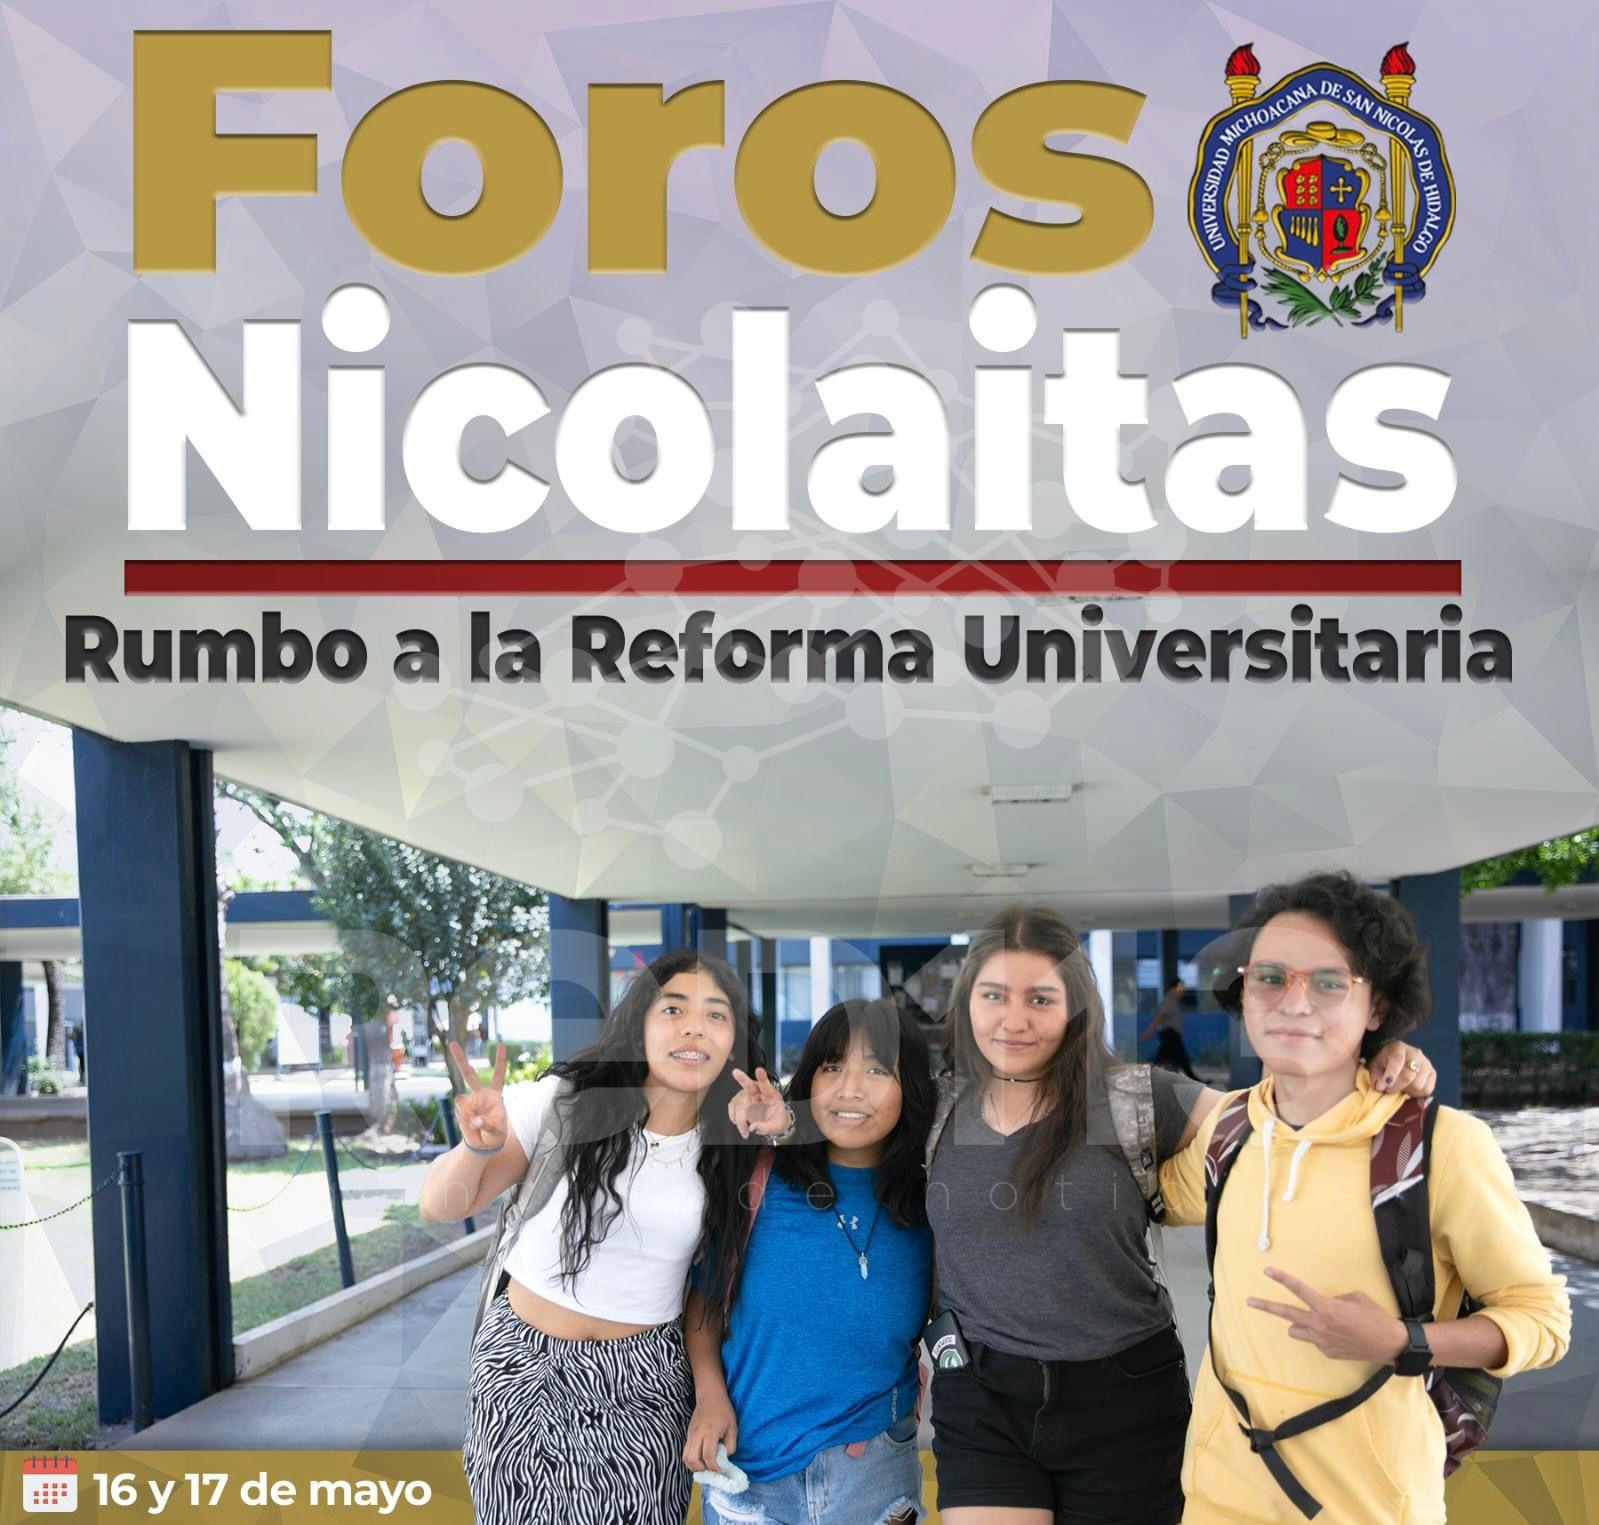 UMSNH inicia este jueves los Foros Nicolaitas, Rumbo a la Reforma Universitaria